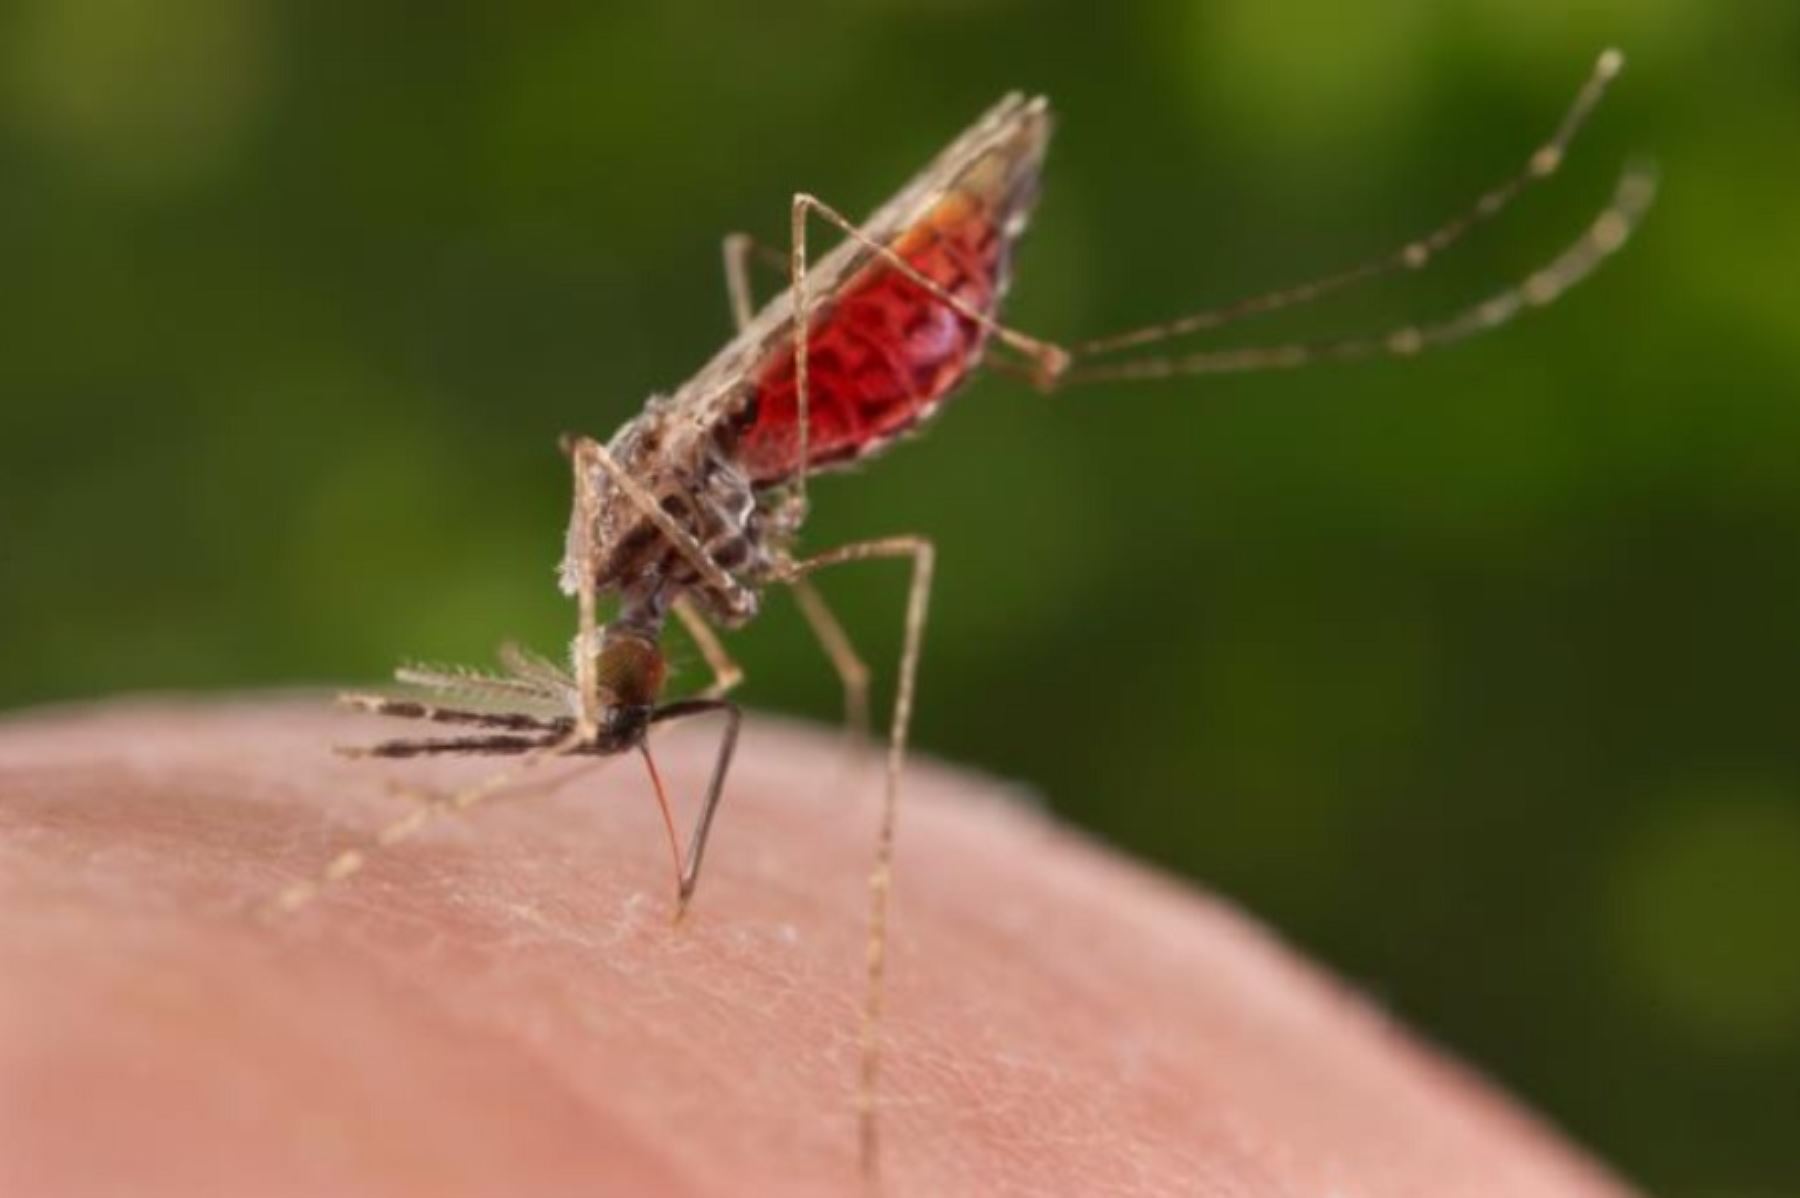 Hoy se conmemora el Día mundial contra la Malaria o paludismo, enfermedad causada por parásitos protozoarios del género Plasmodium, que se transmite por la picadura del mosquito hembra del género Anopheles.